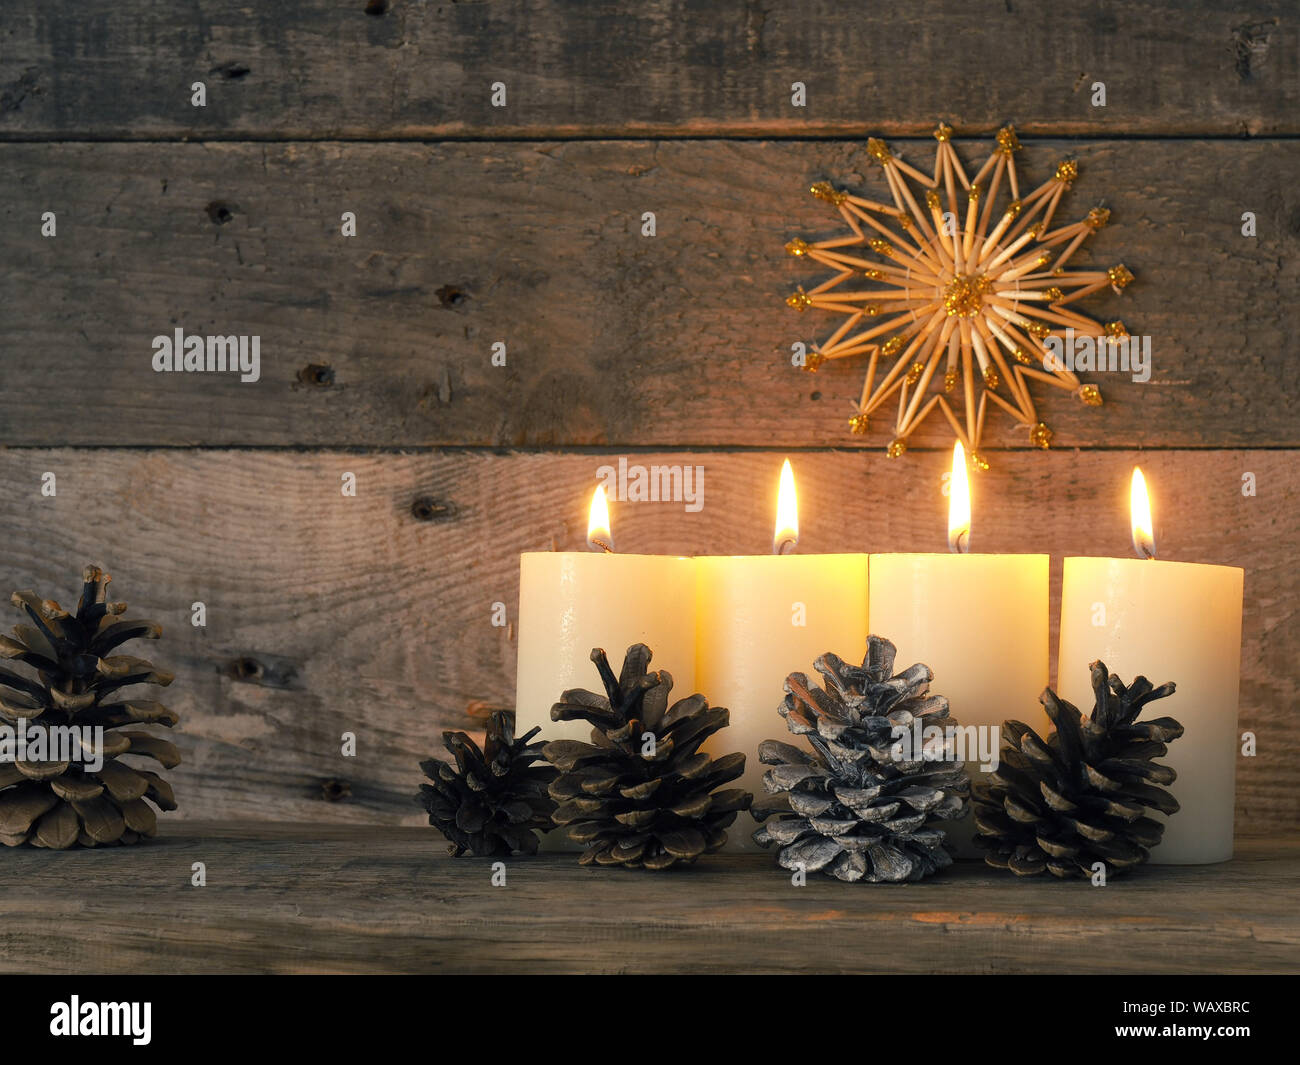 Vier Advent Kerzen brennen, die vierte Kerze brennt Advent, Weihnachten Konzept Stockfoto